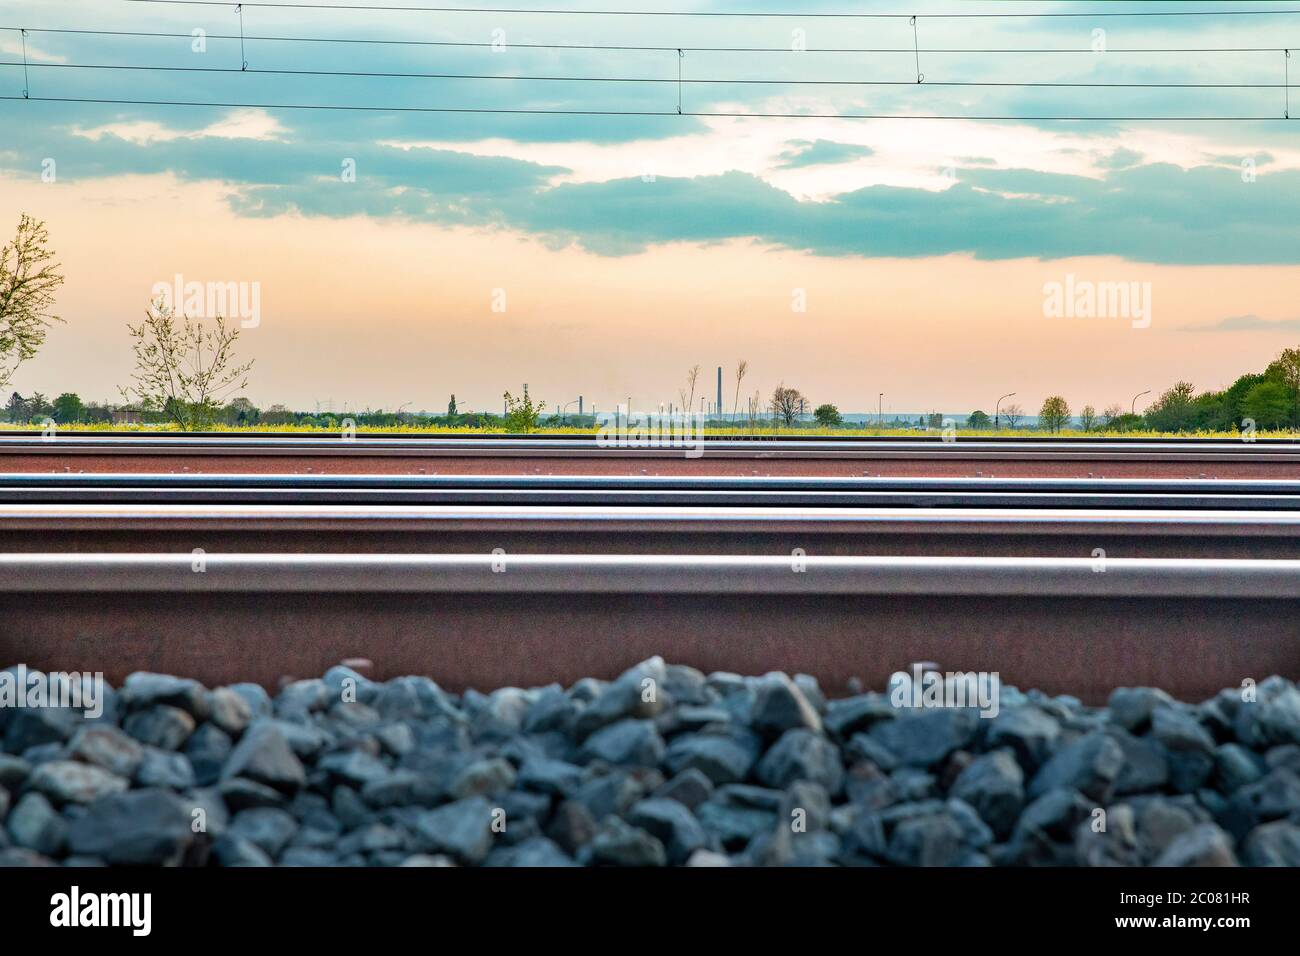 Symbolfoto, Symbolbild Eisenbahnschiene. Köln; 16.04.2020 Stock Photo